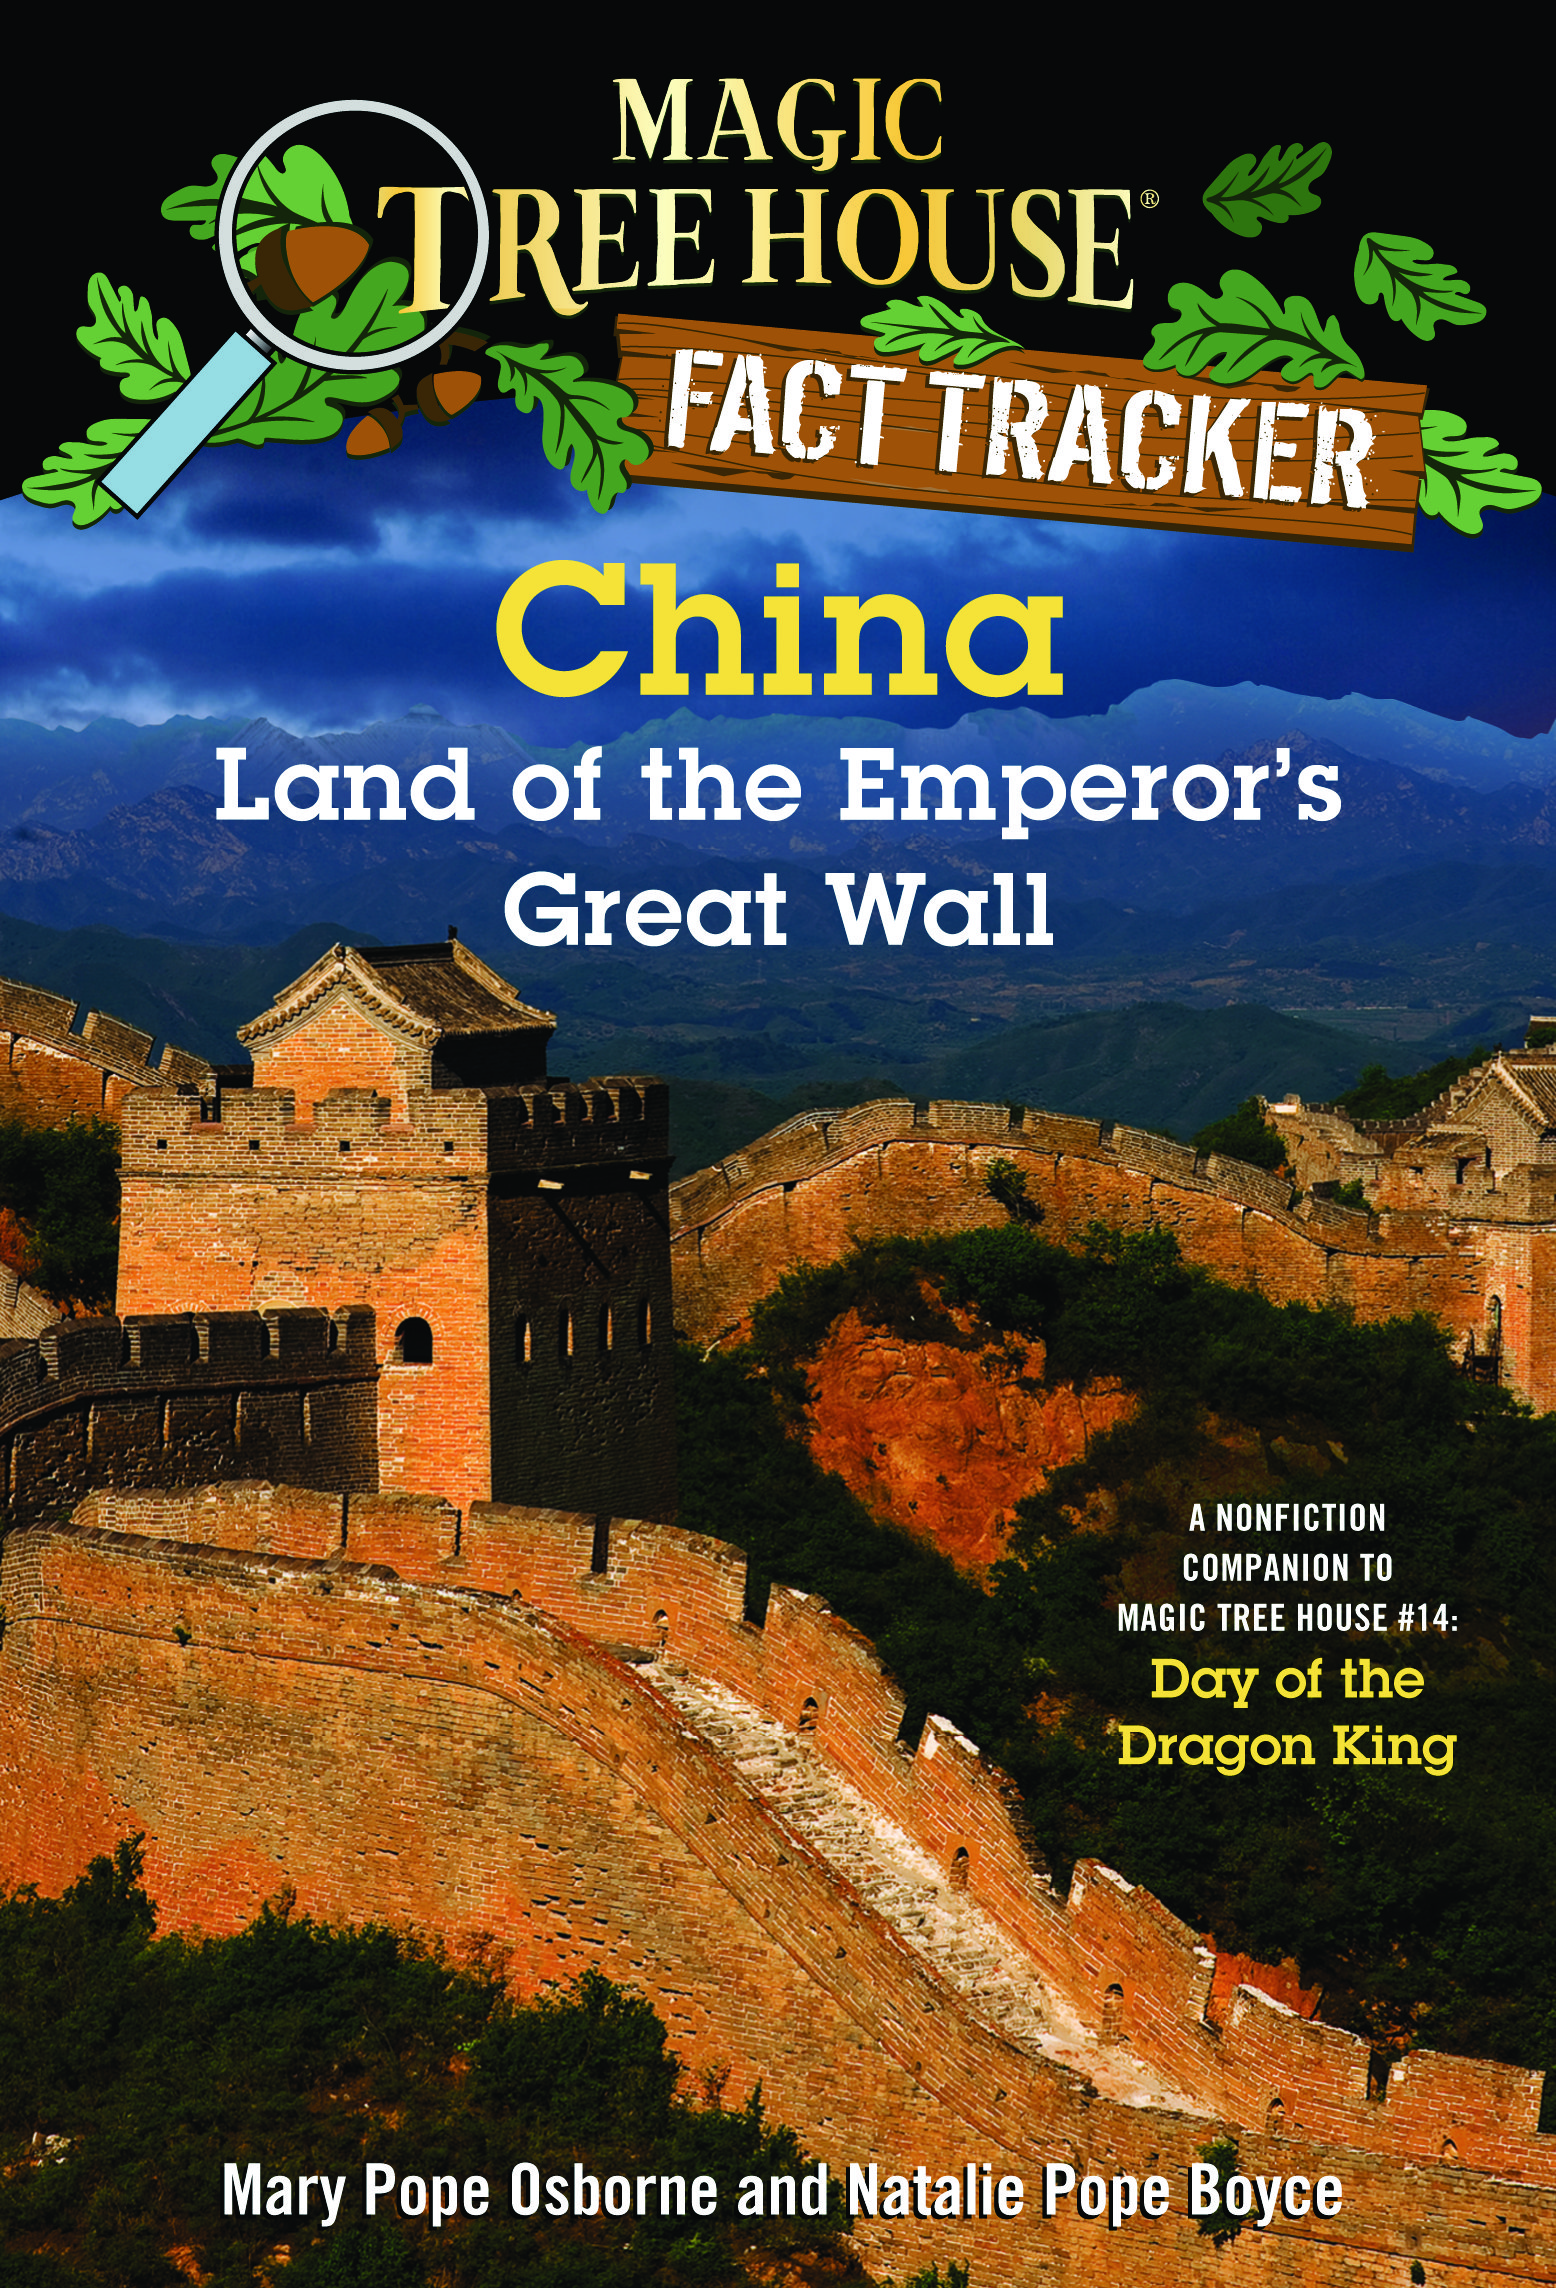 Magic Tree House Fact Tracker #31 CHINA